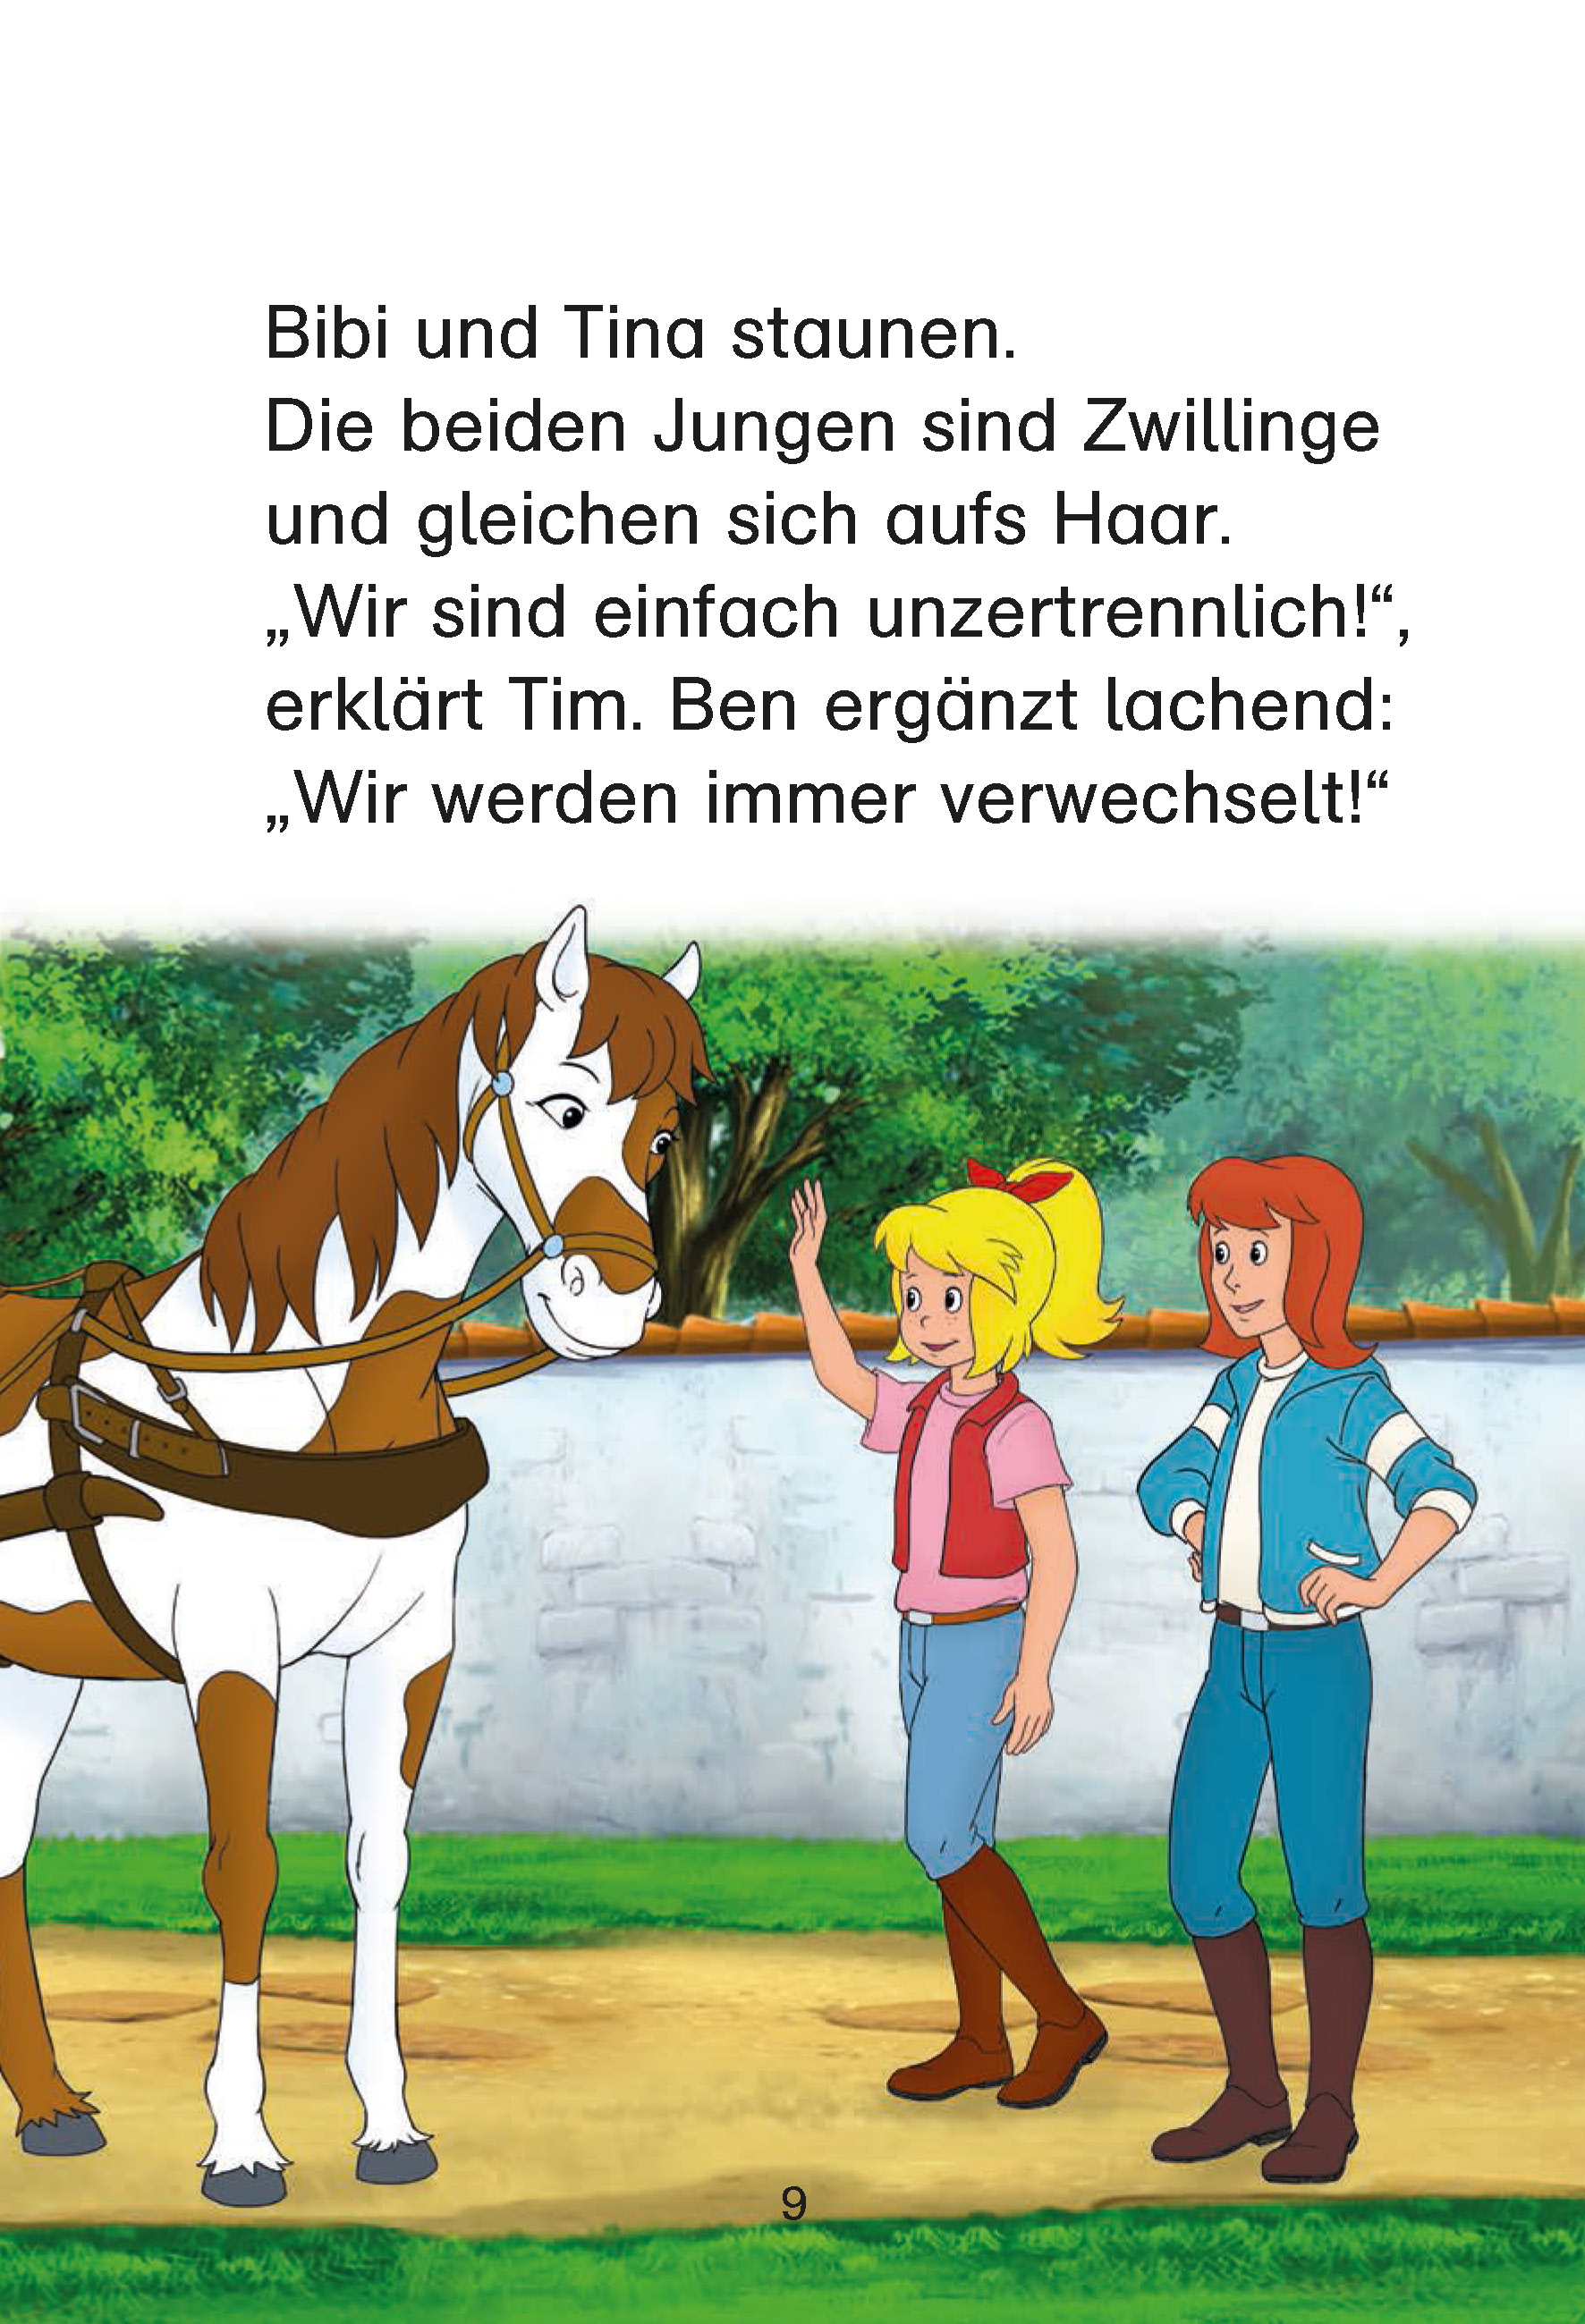 Bibi & Tina: Pferdestarke Abenteuer